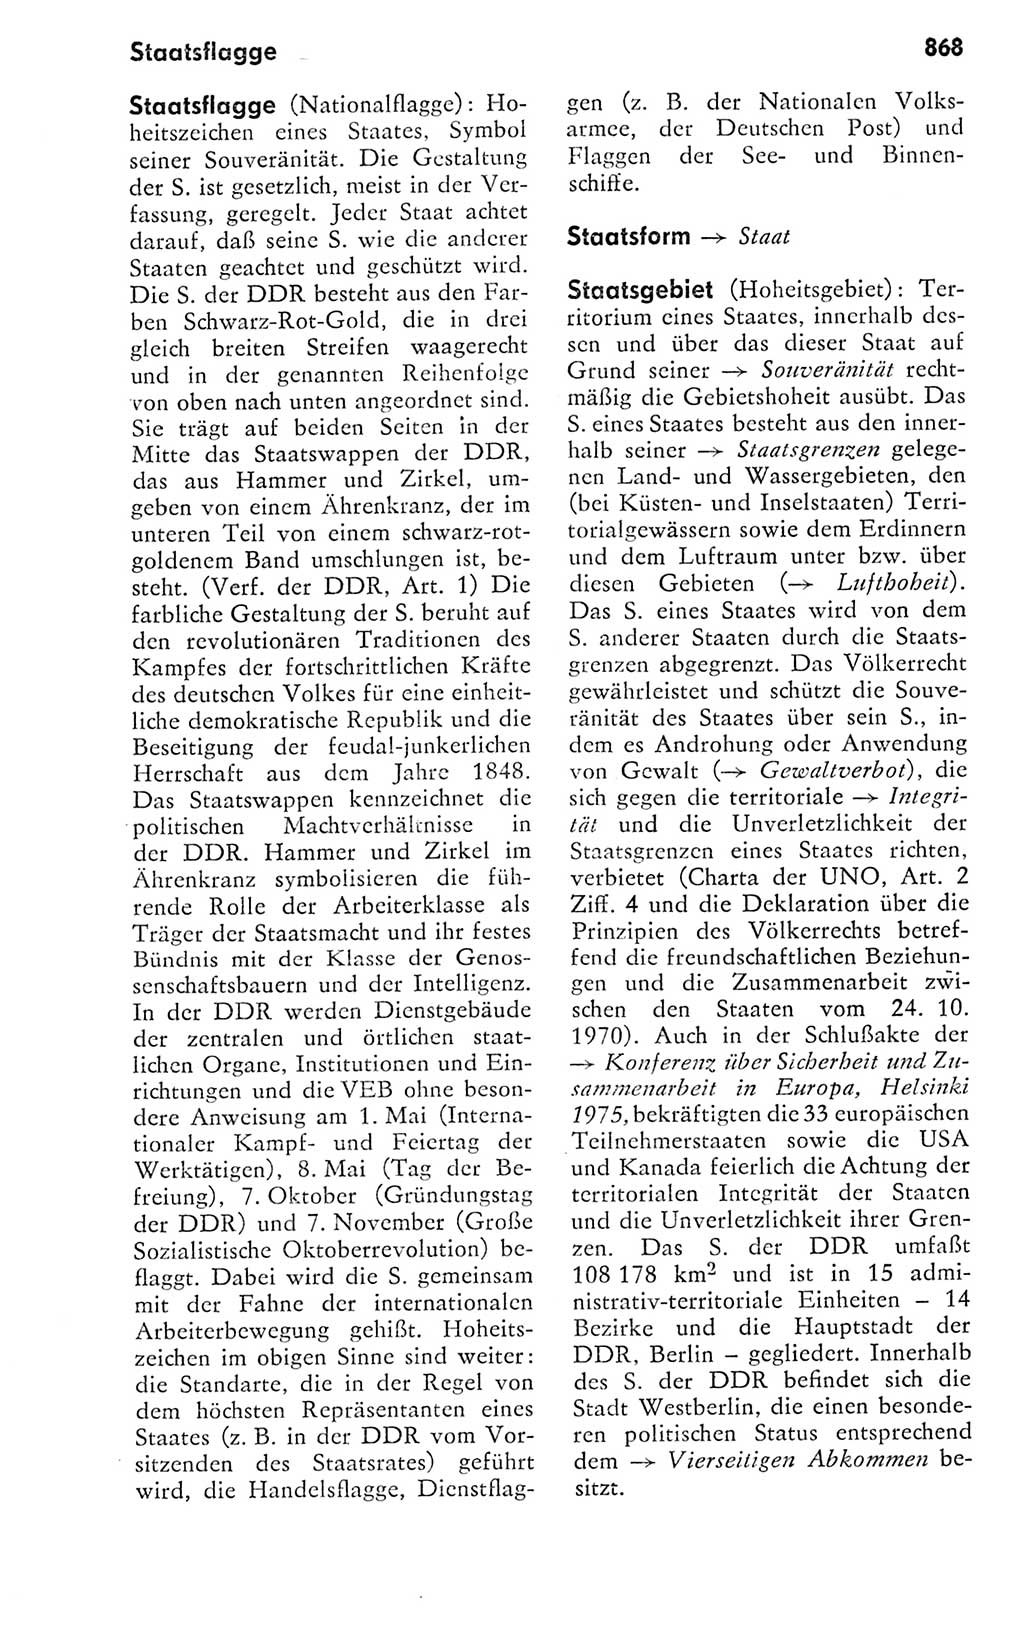 Kleines politisches Wörterbuch [Deutsche Demokratische Republik (DDR)] 1978, Seite 868 (Kl. pol. Wb. DDR 1978, S. 868)